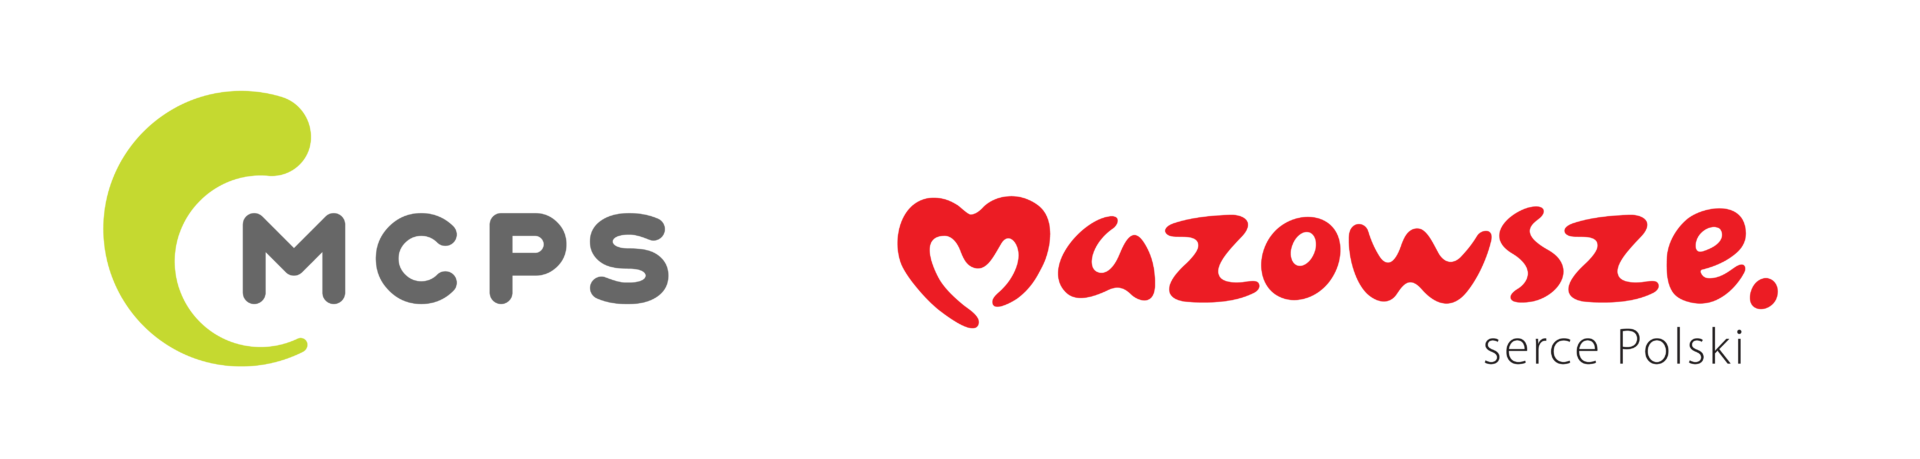 logo podstawowe mcps mazowsze 